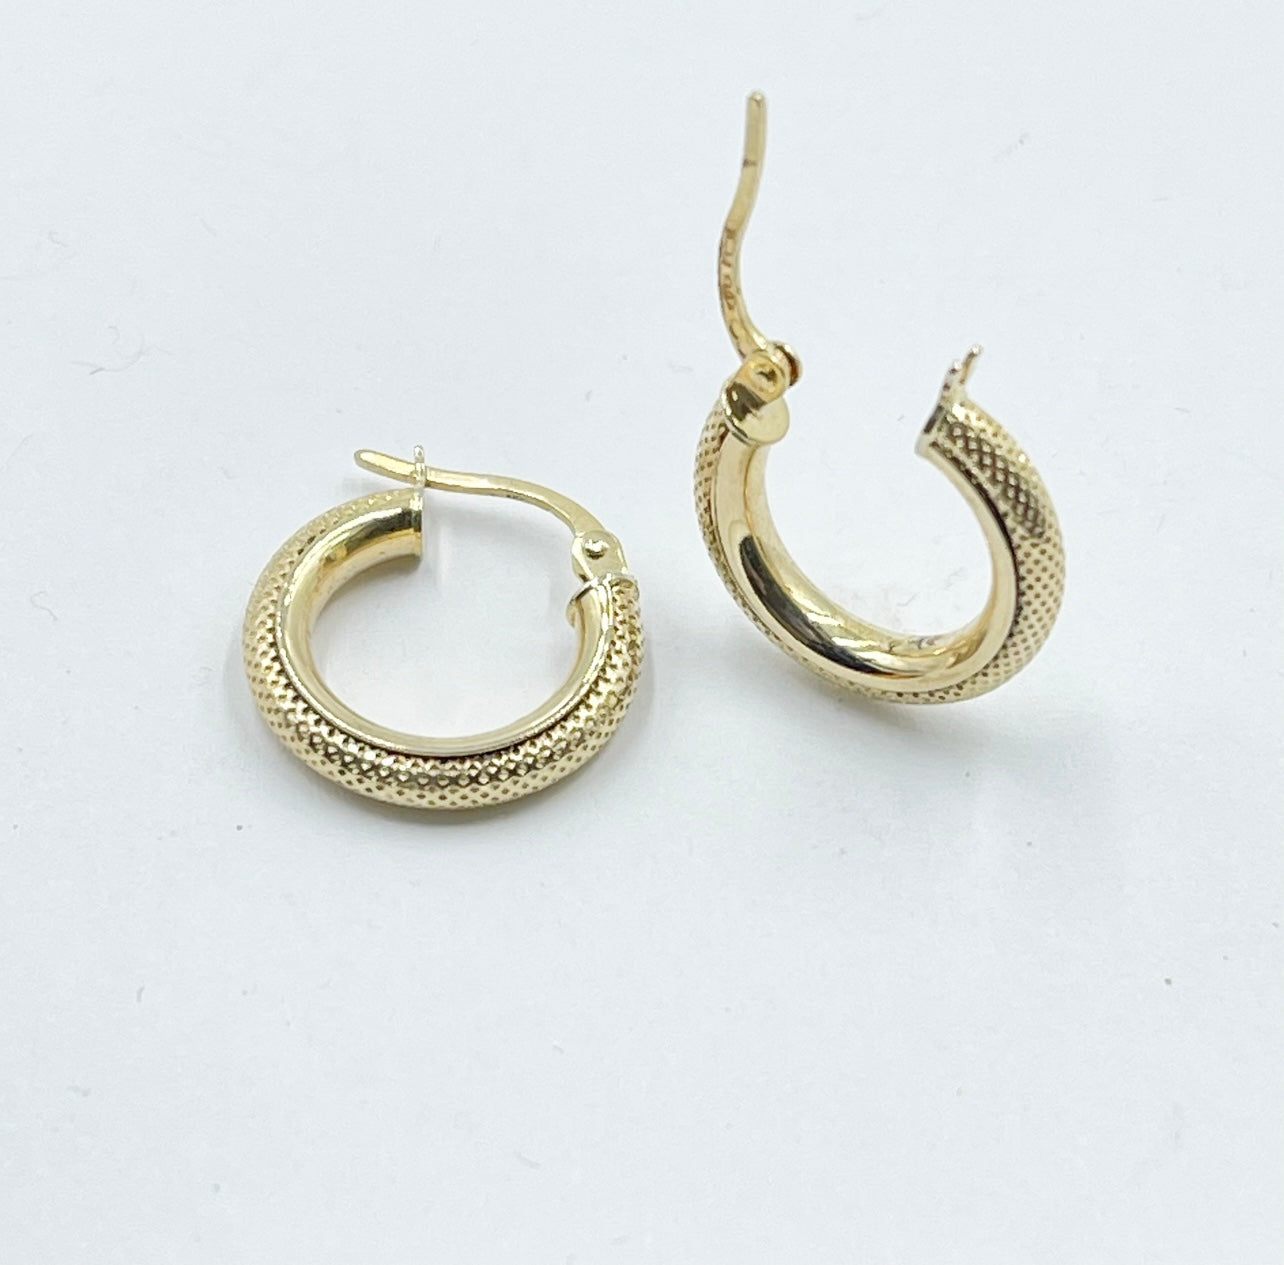 9ct yellow gold hoop earrings